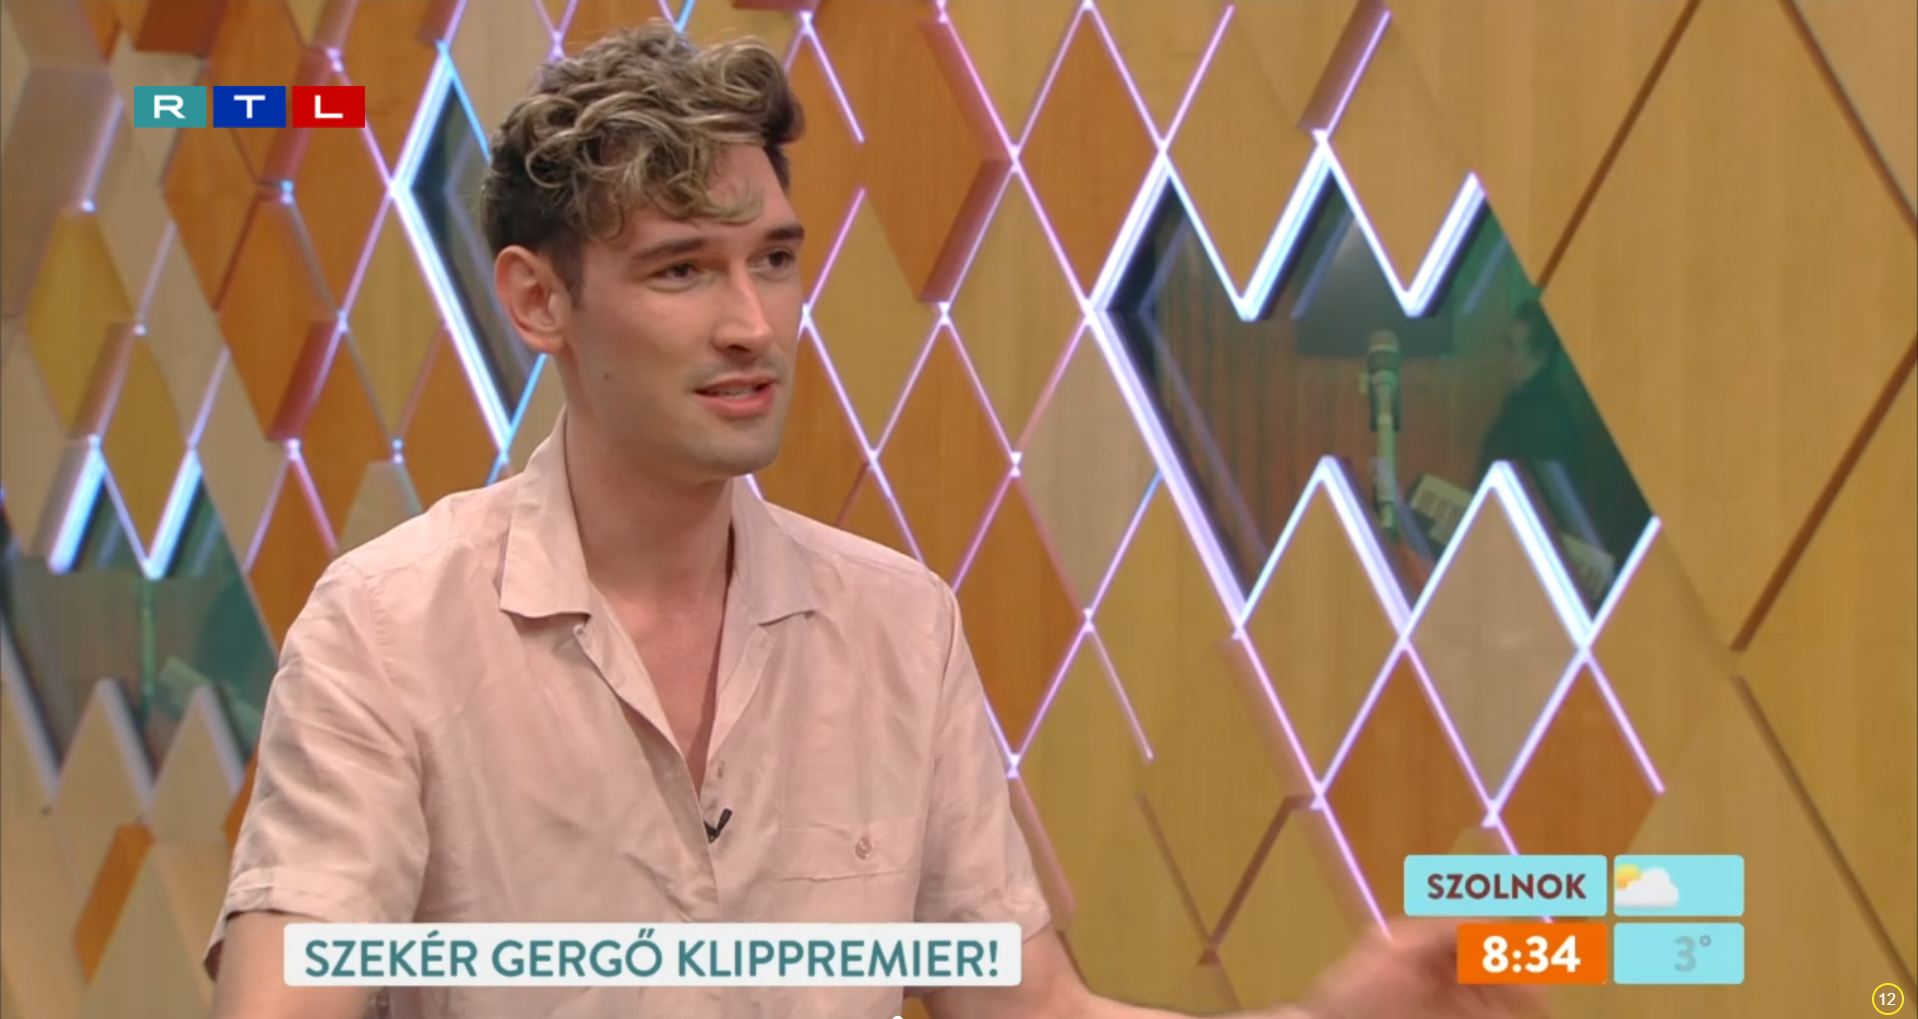 Szekér Gergő élő adásban comingoutolt az RTL reggeliben